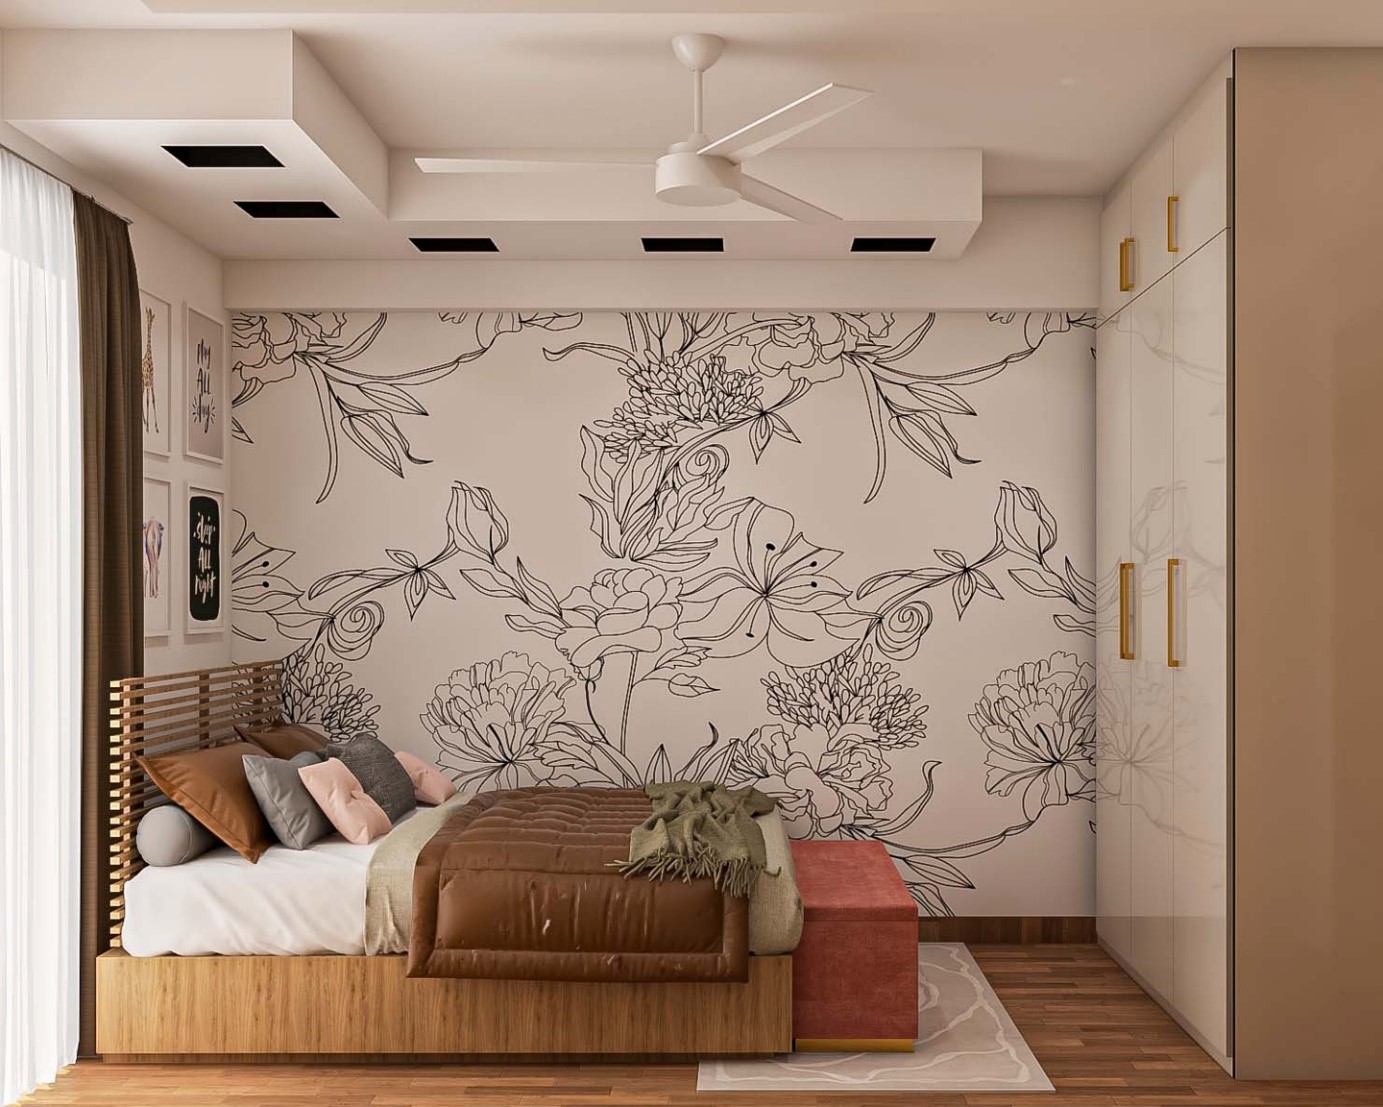  کاغذ دیواری ساده و گلدار برای اتاق خواب و دیوار کانونی